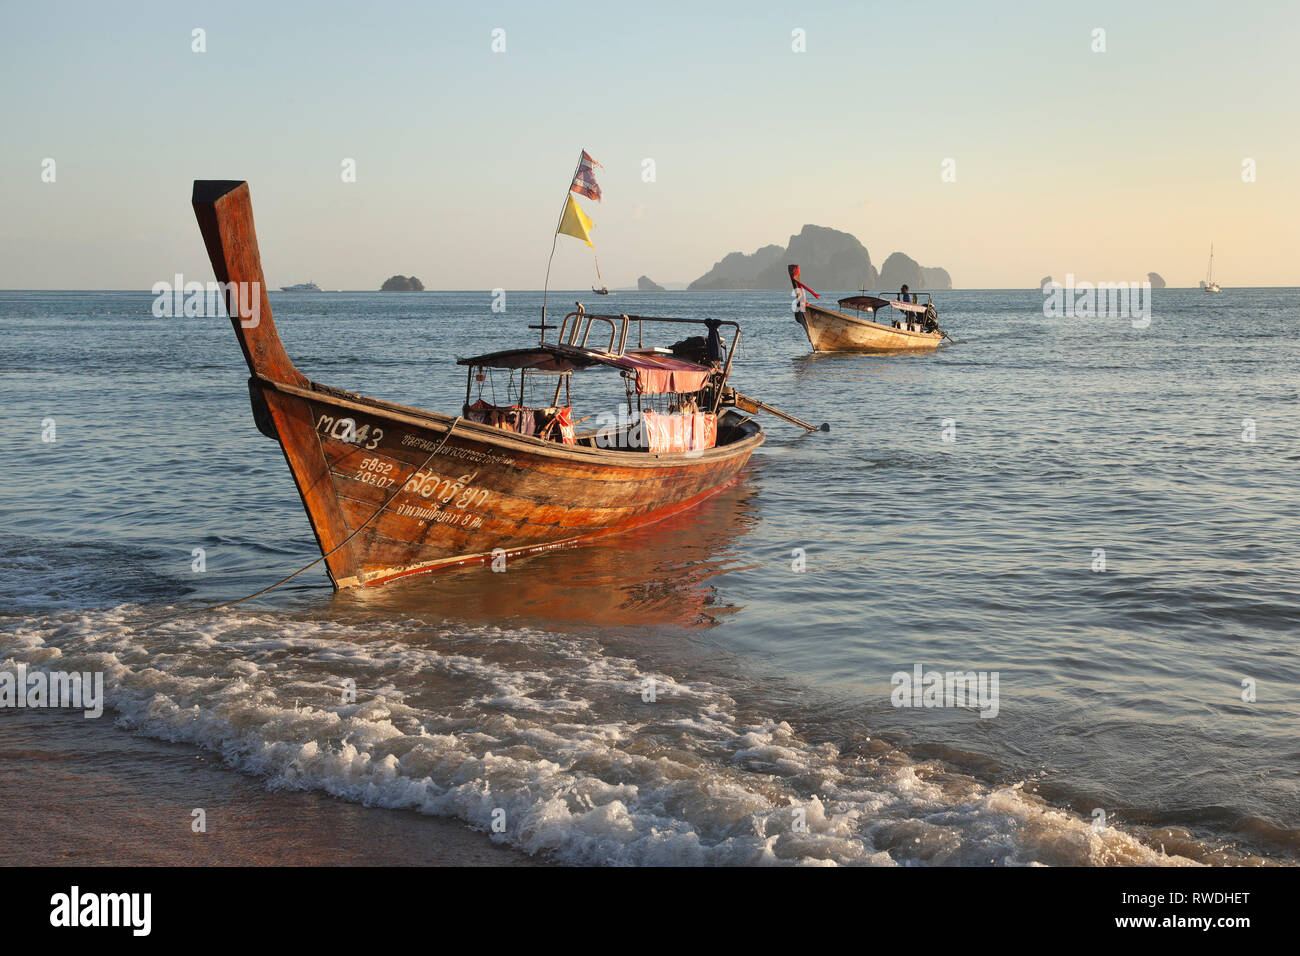 Bateaux à longue queue island hopping, Ao Nang, Krabi, Thaïlande, soleil du soir Banque D'Images